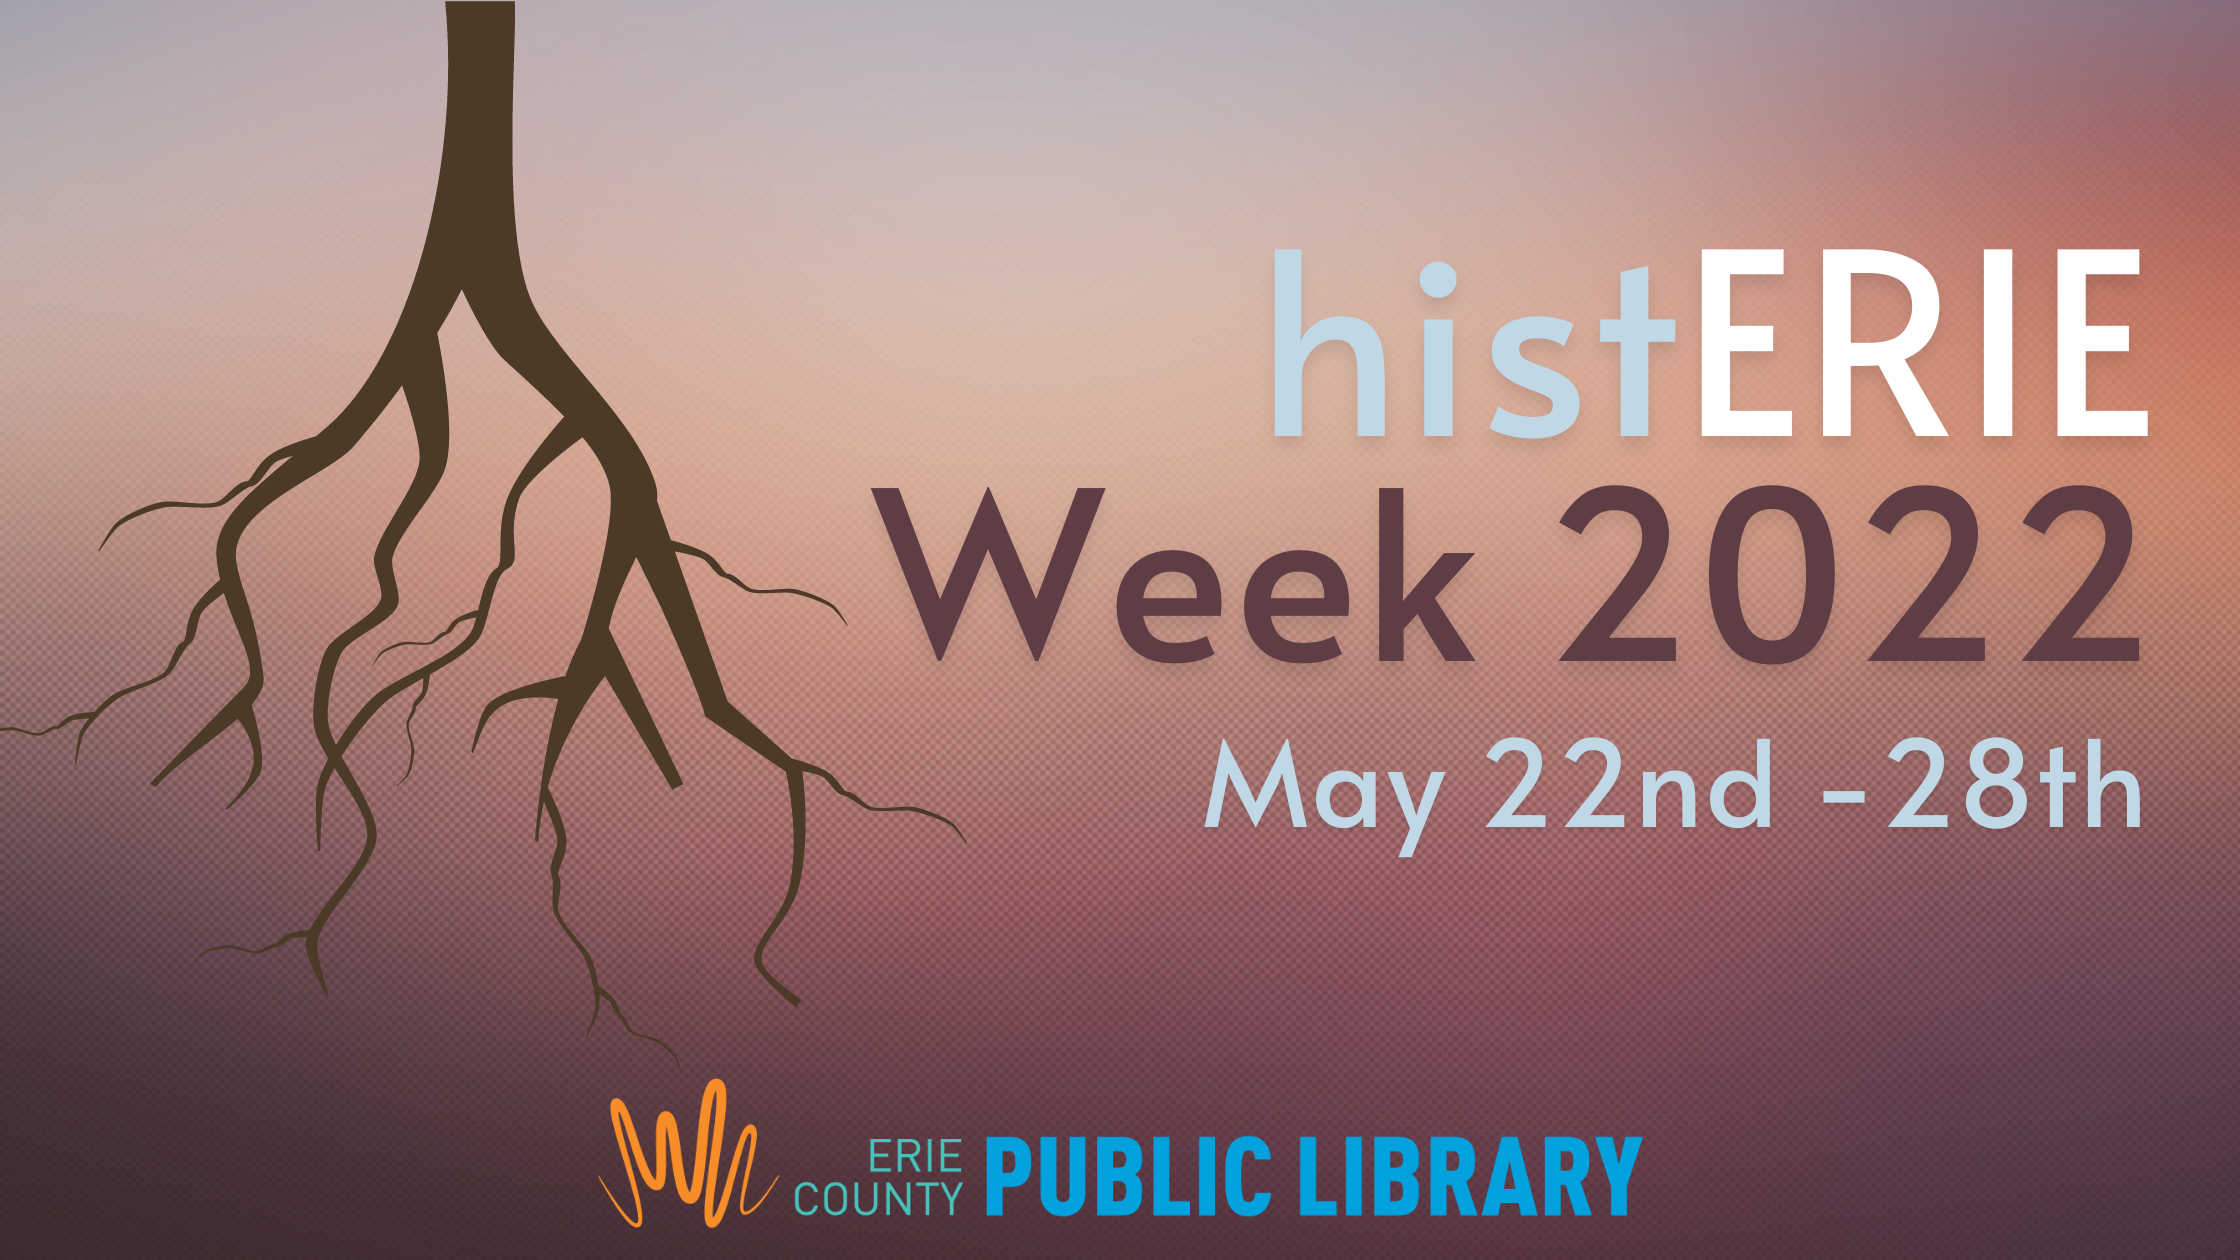 histERIE Week  - Preserving West 6th Street: Jeff Kidder